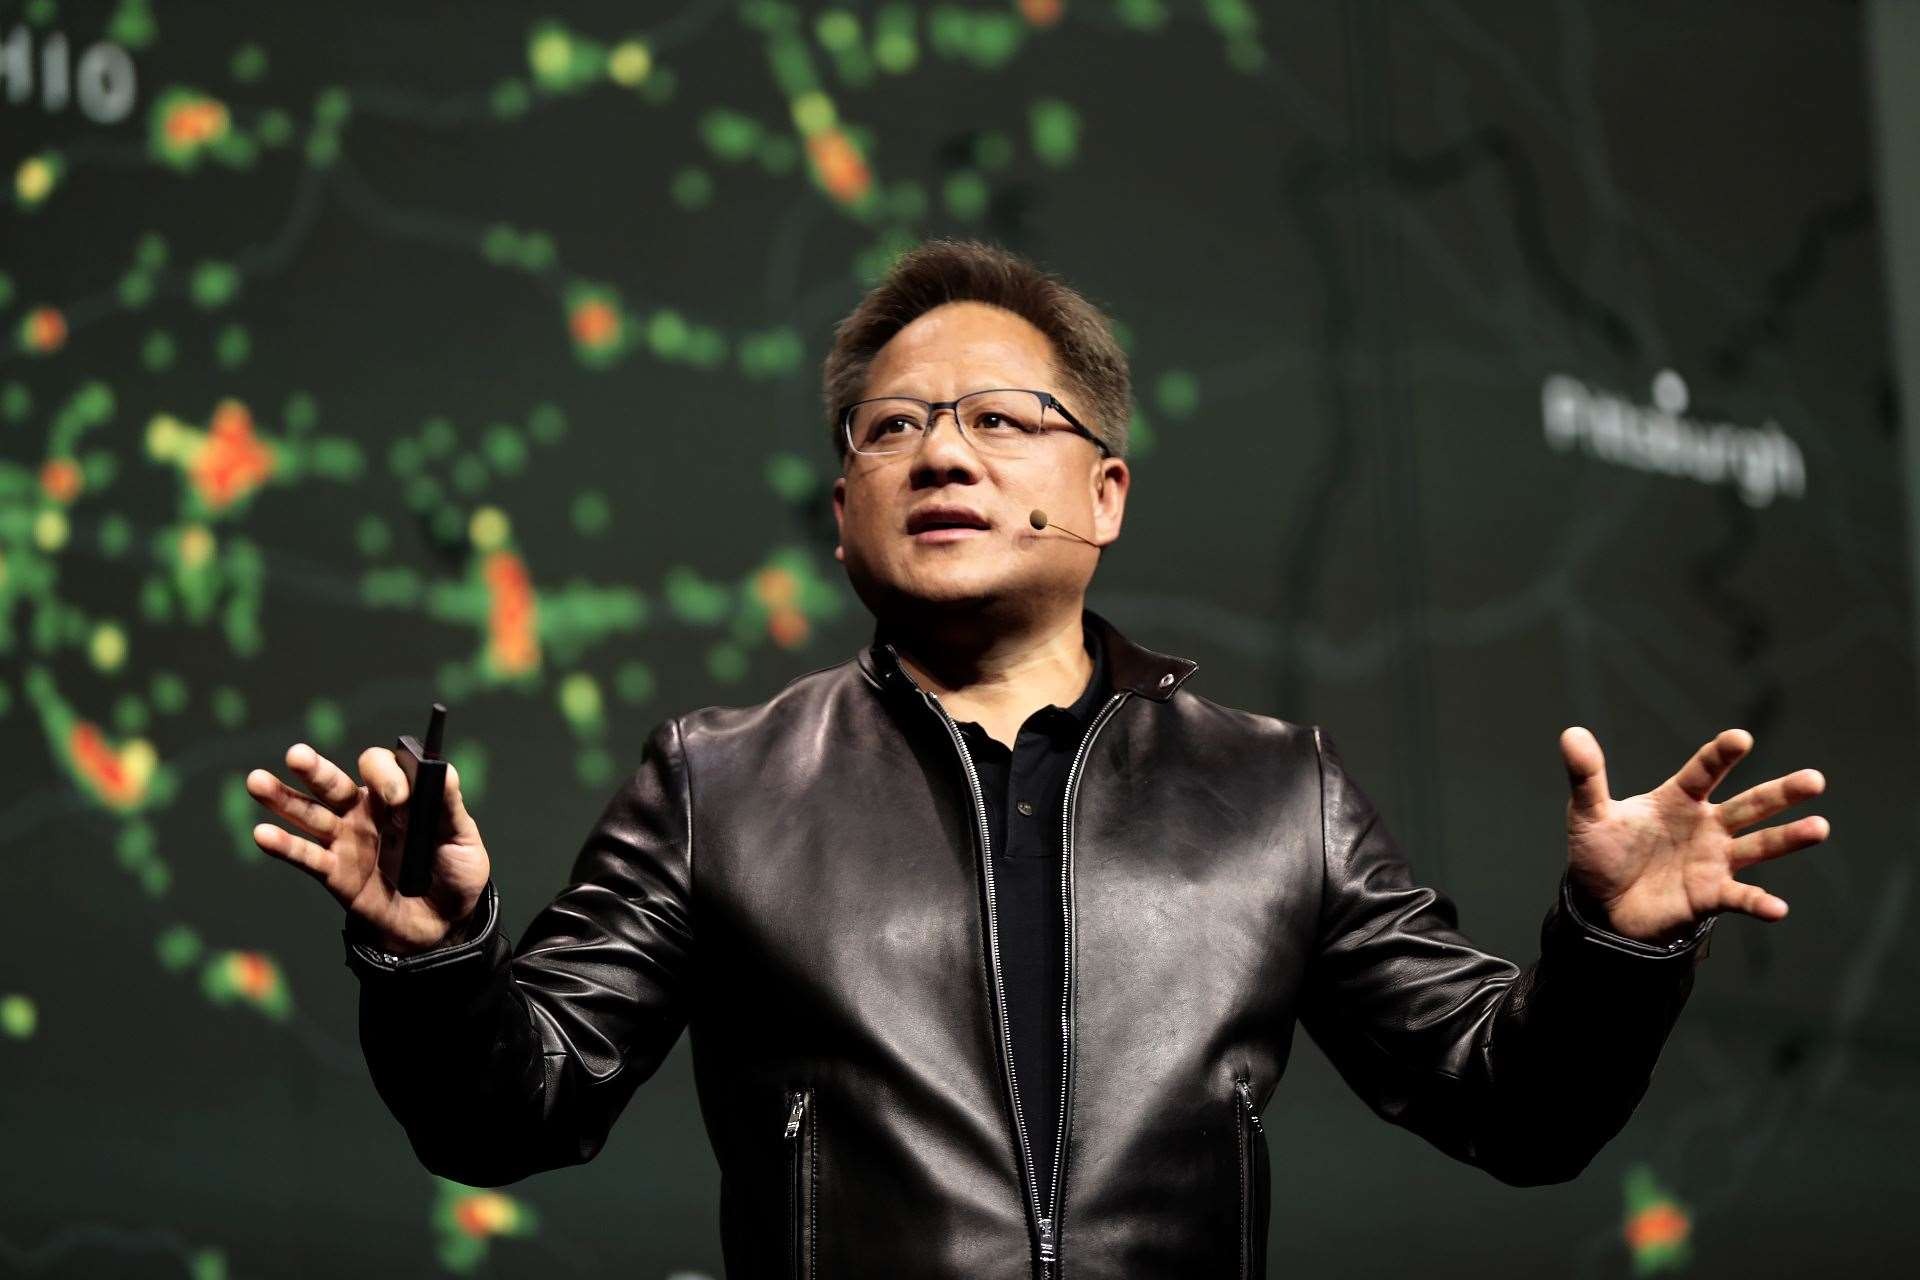 Giám đốc điều hành NVIDIA Jensen Huang sẽ hé lộ thông tin hấp dẫn về các sản phẩm, công nghệ AI mới trong GTC Keynote